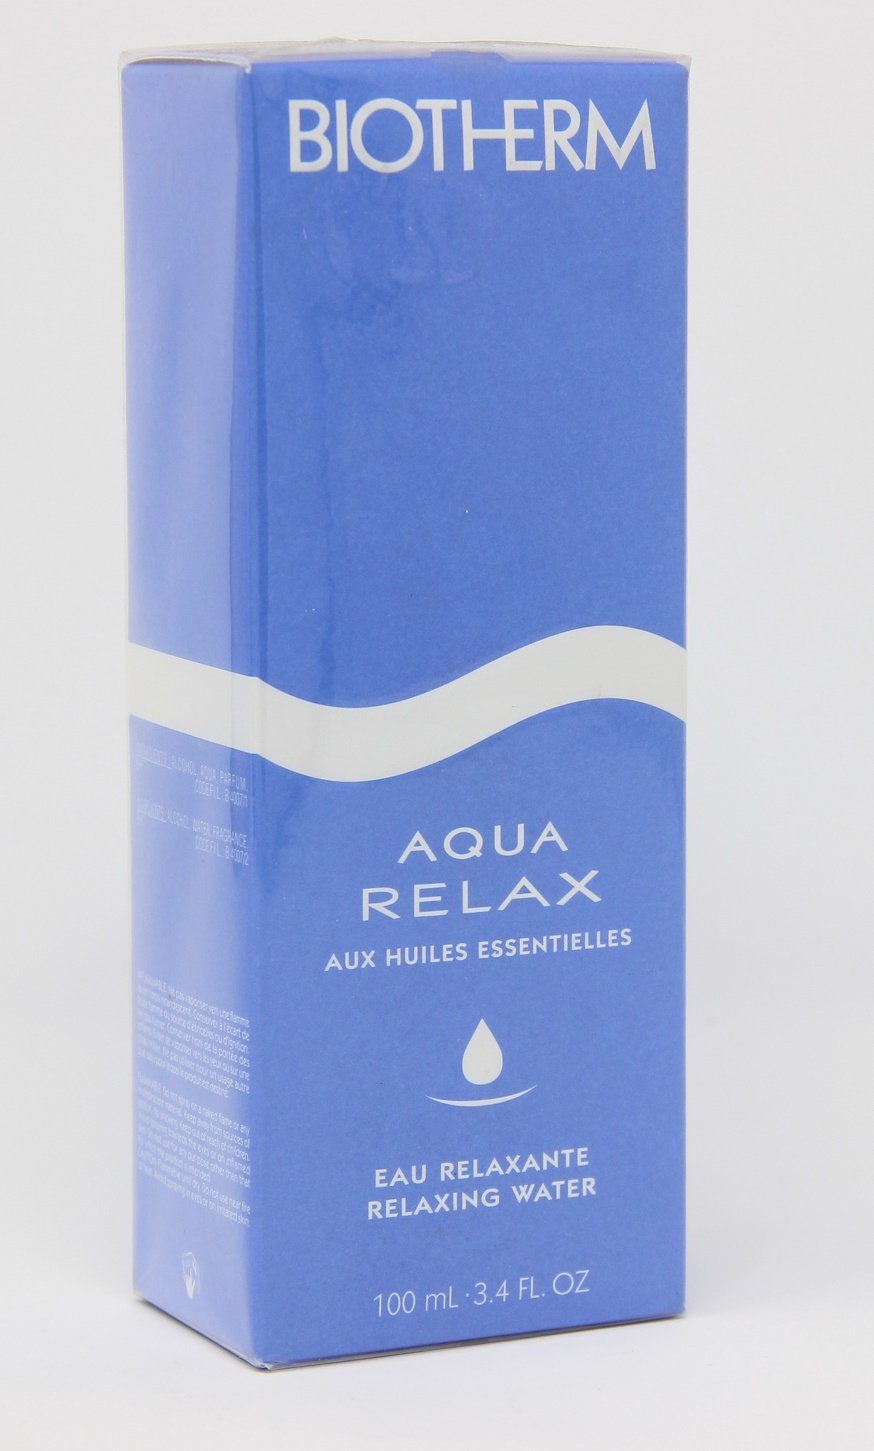 100ml water Relax BIOTHERM relaxing Biotherm oils essential Aqua Selbstbräunungstücher